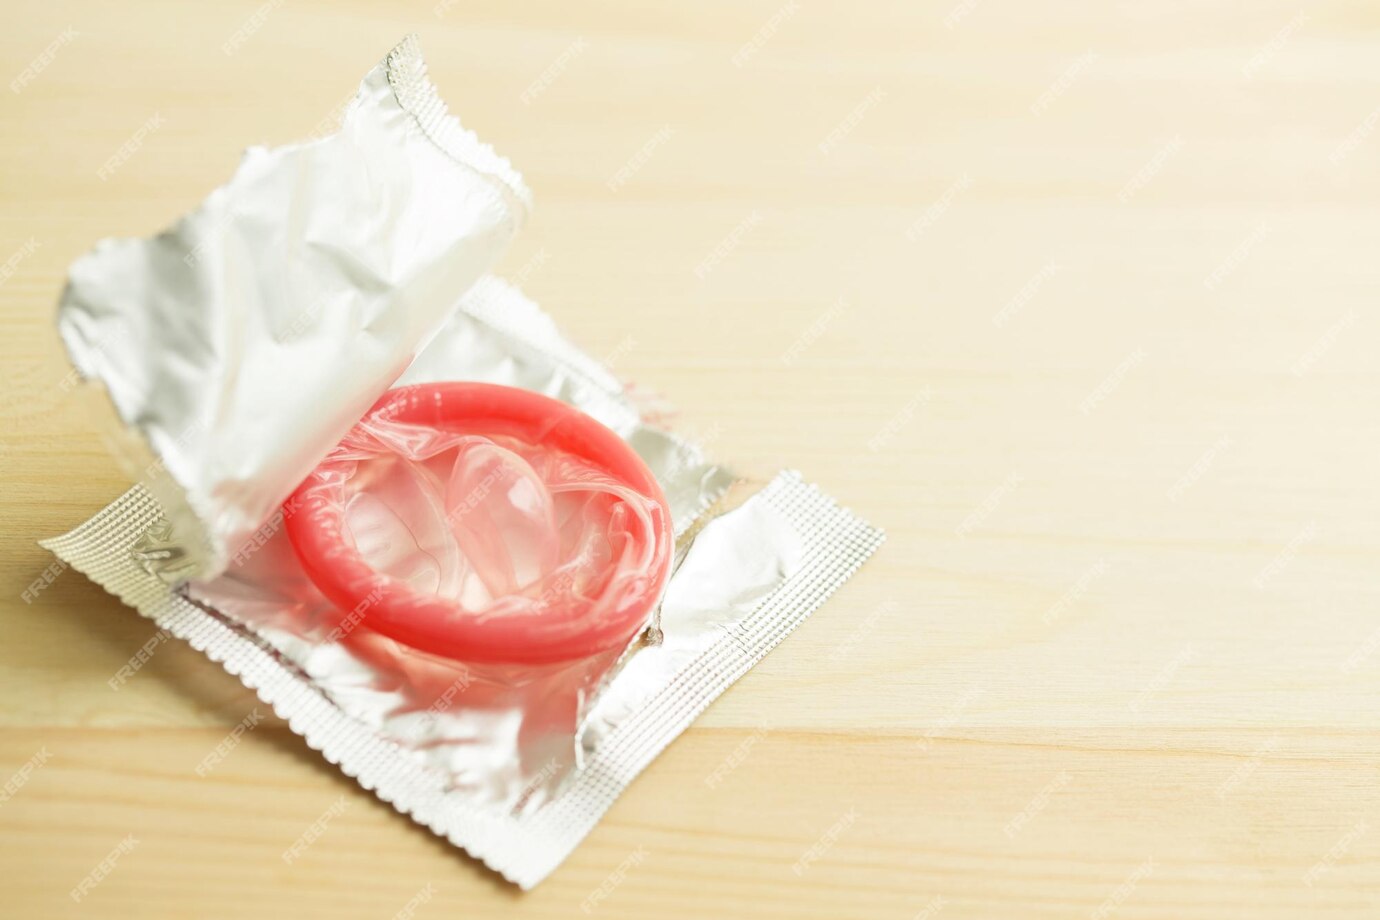 rozbalený prezervativ